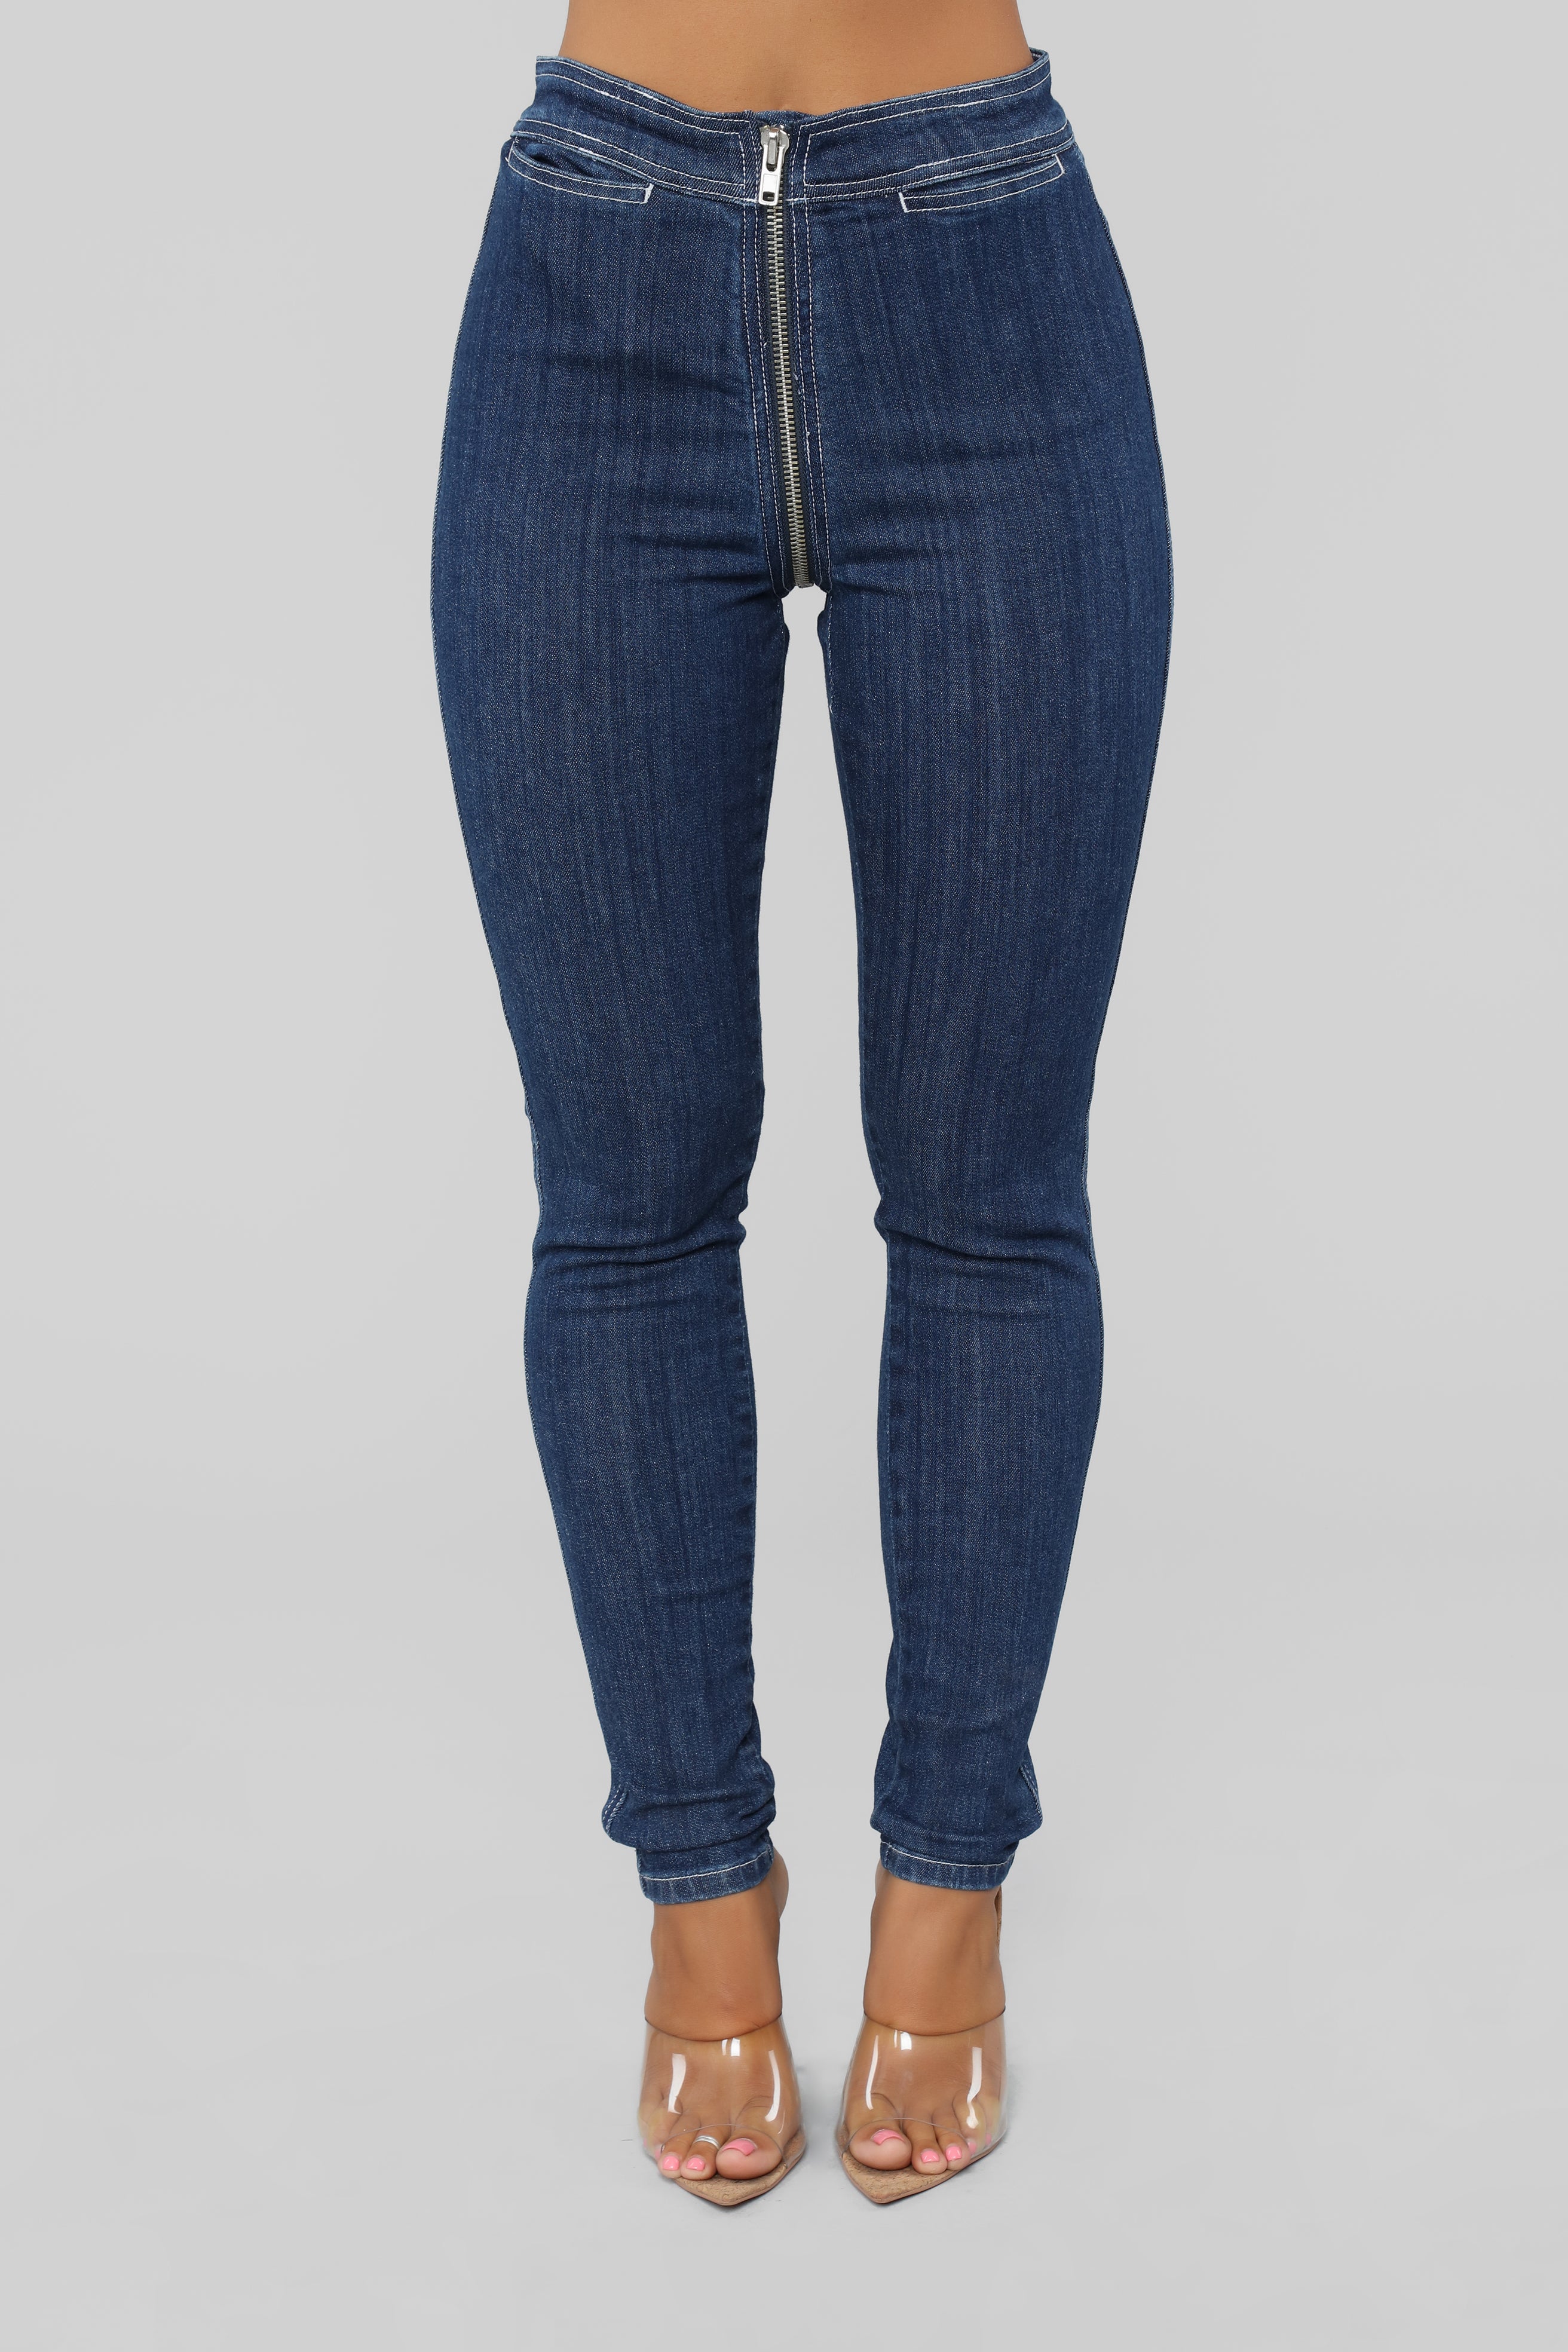 Just The Zip Jeans - Dark Denim | Fashion Nova, Jeans Fashion Nova